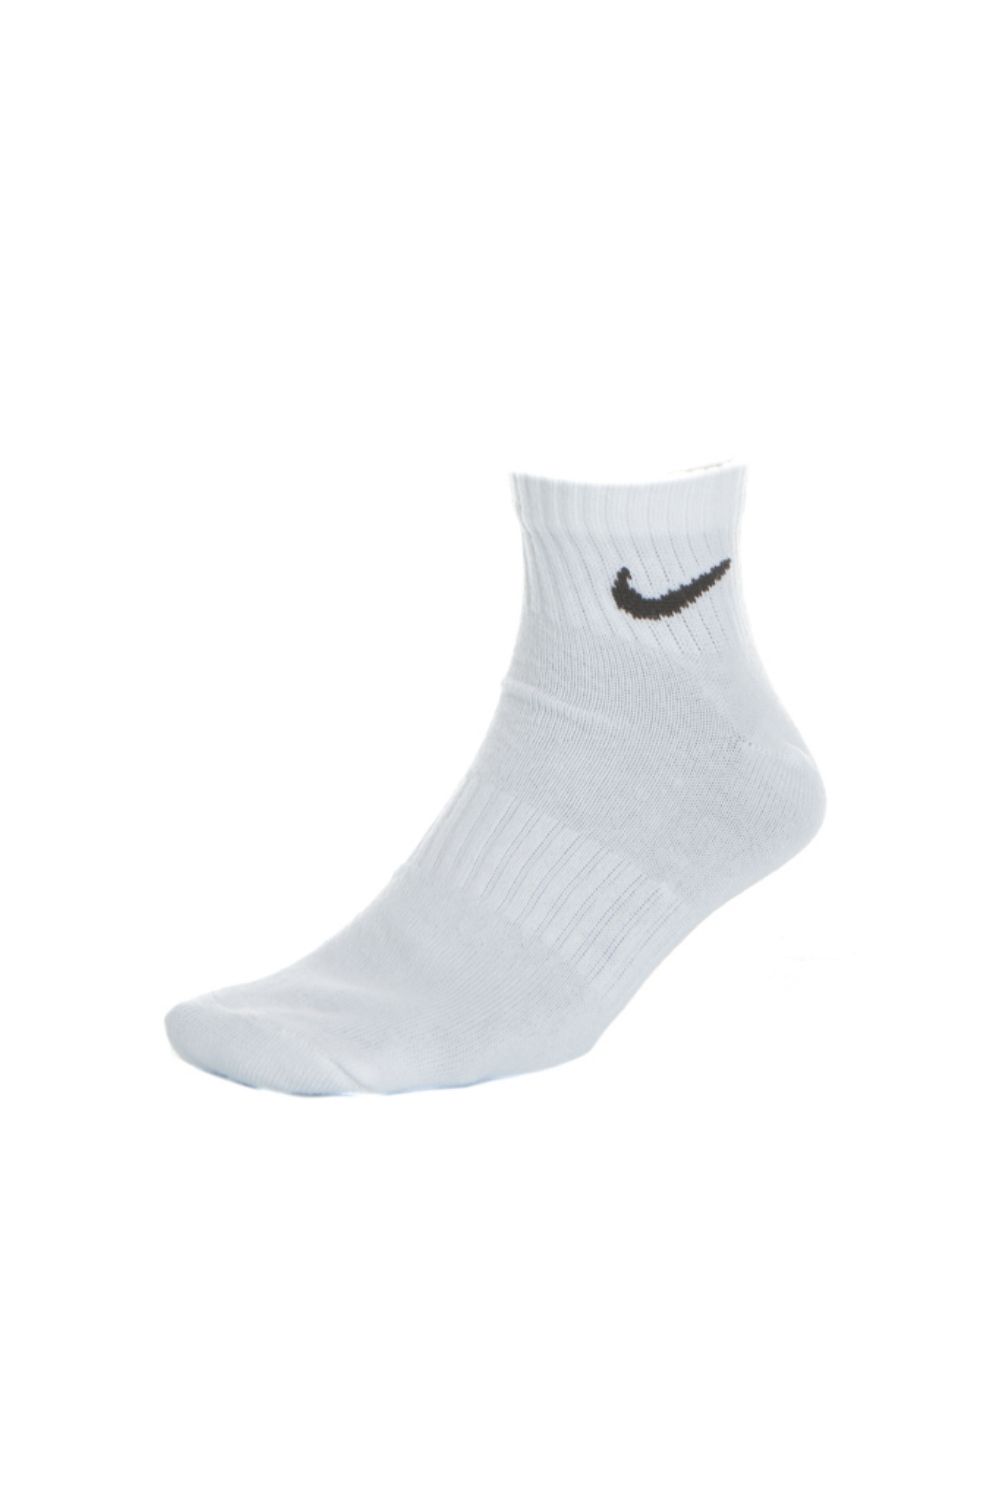 NIKE - Σετ από 3 ζευγάρια κάλτσες NIKE λευκές Γυναικεία/Αξεσουάρ/Κάλτσες